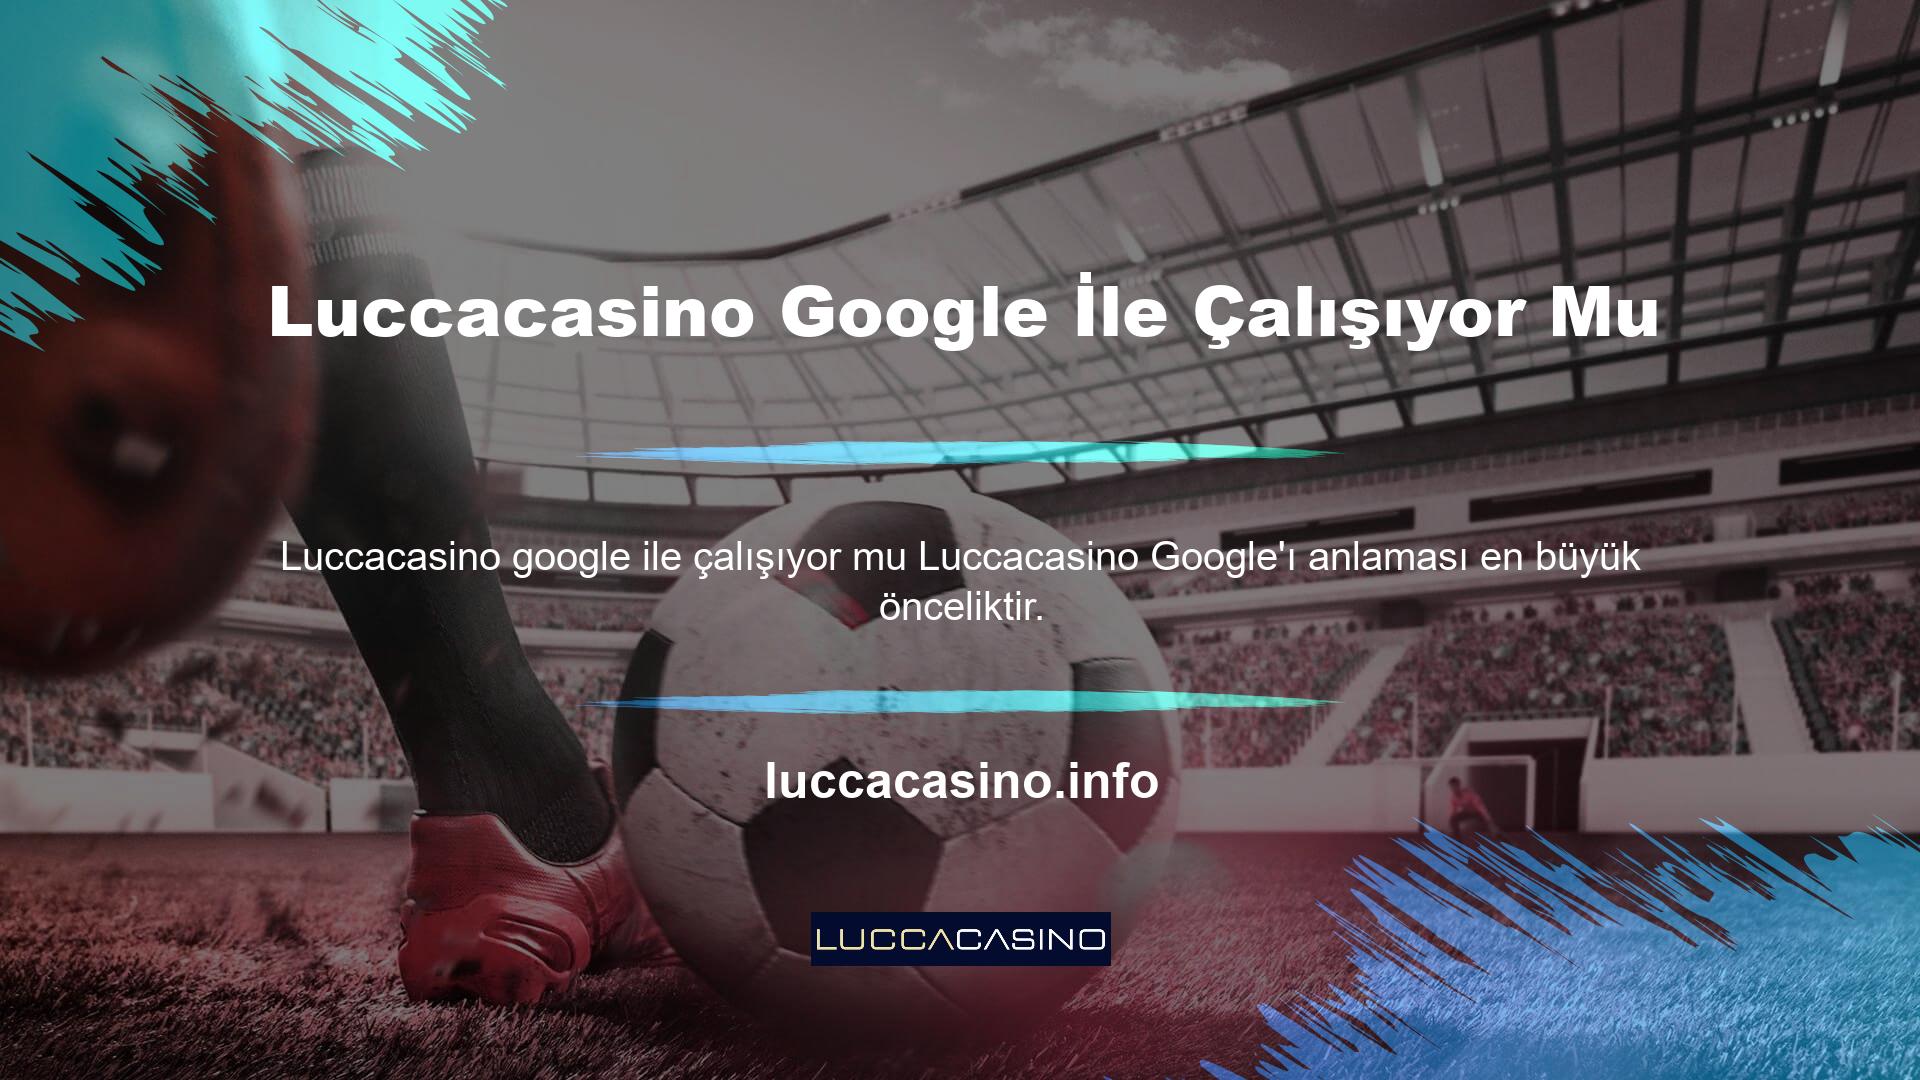 Luccacasino Yeni giriş URL'si gerçekte kaç tane Luccacasino olduğu sorusunu yanıtlıyor